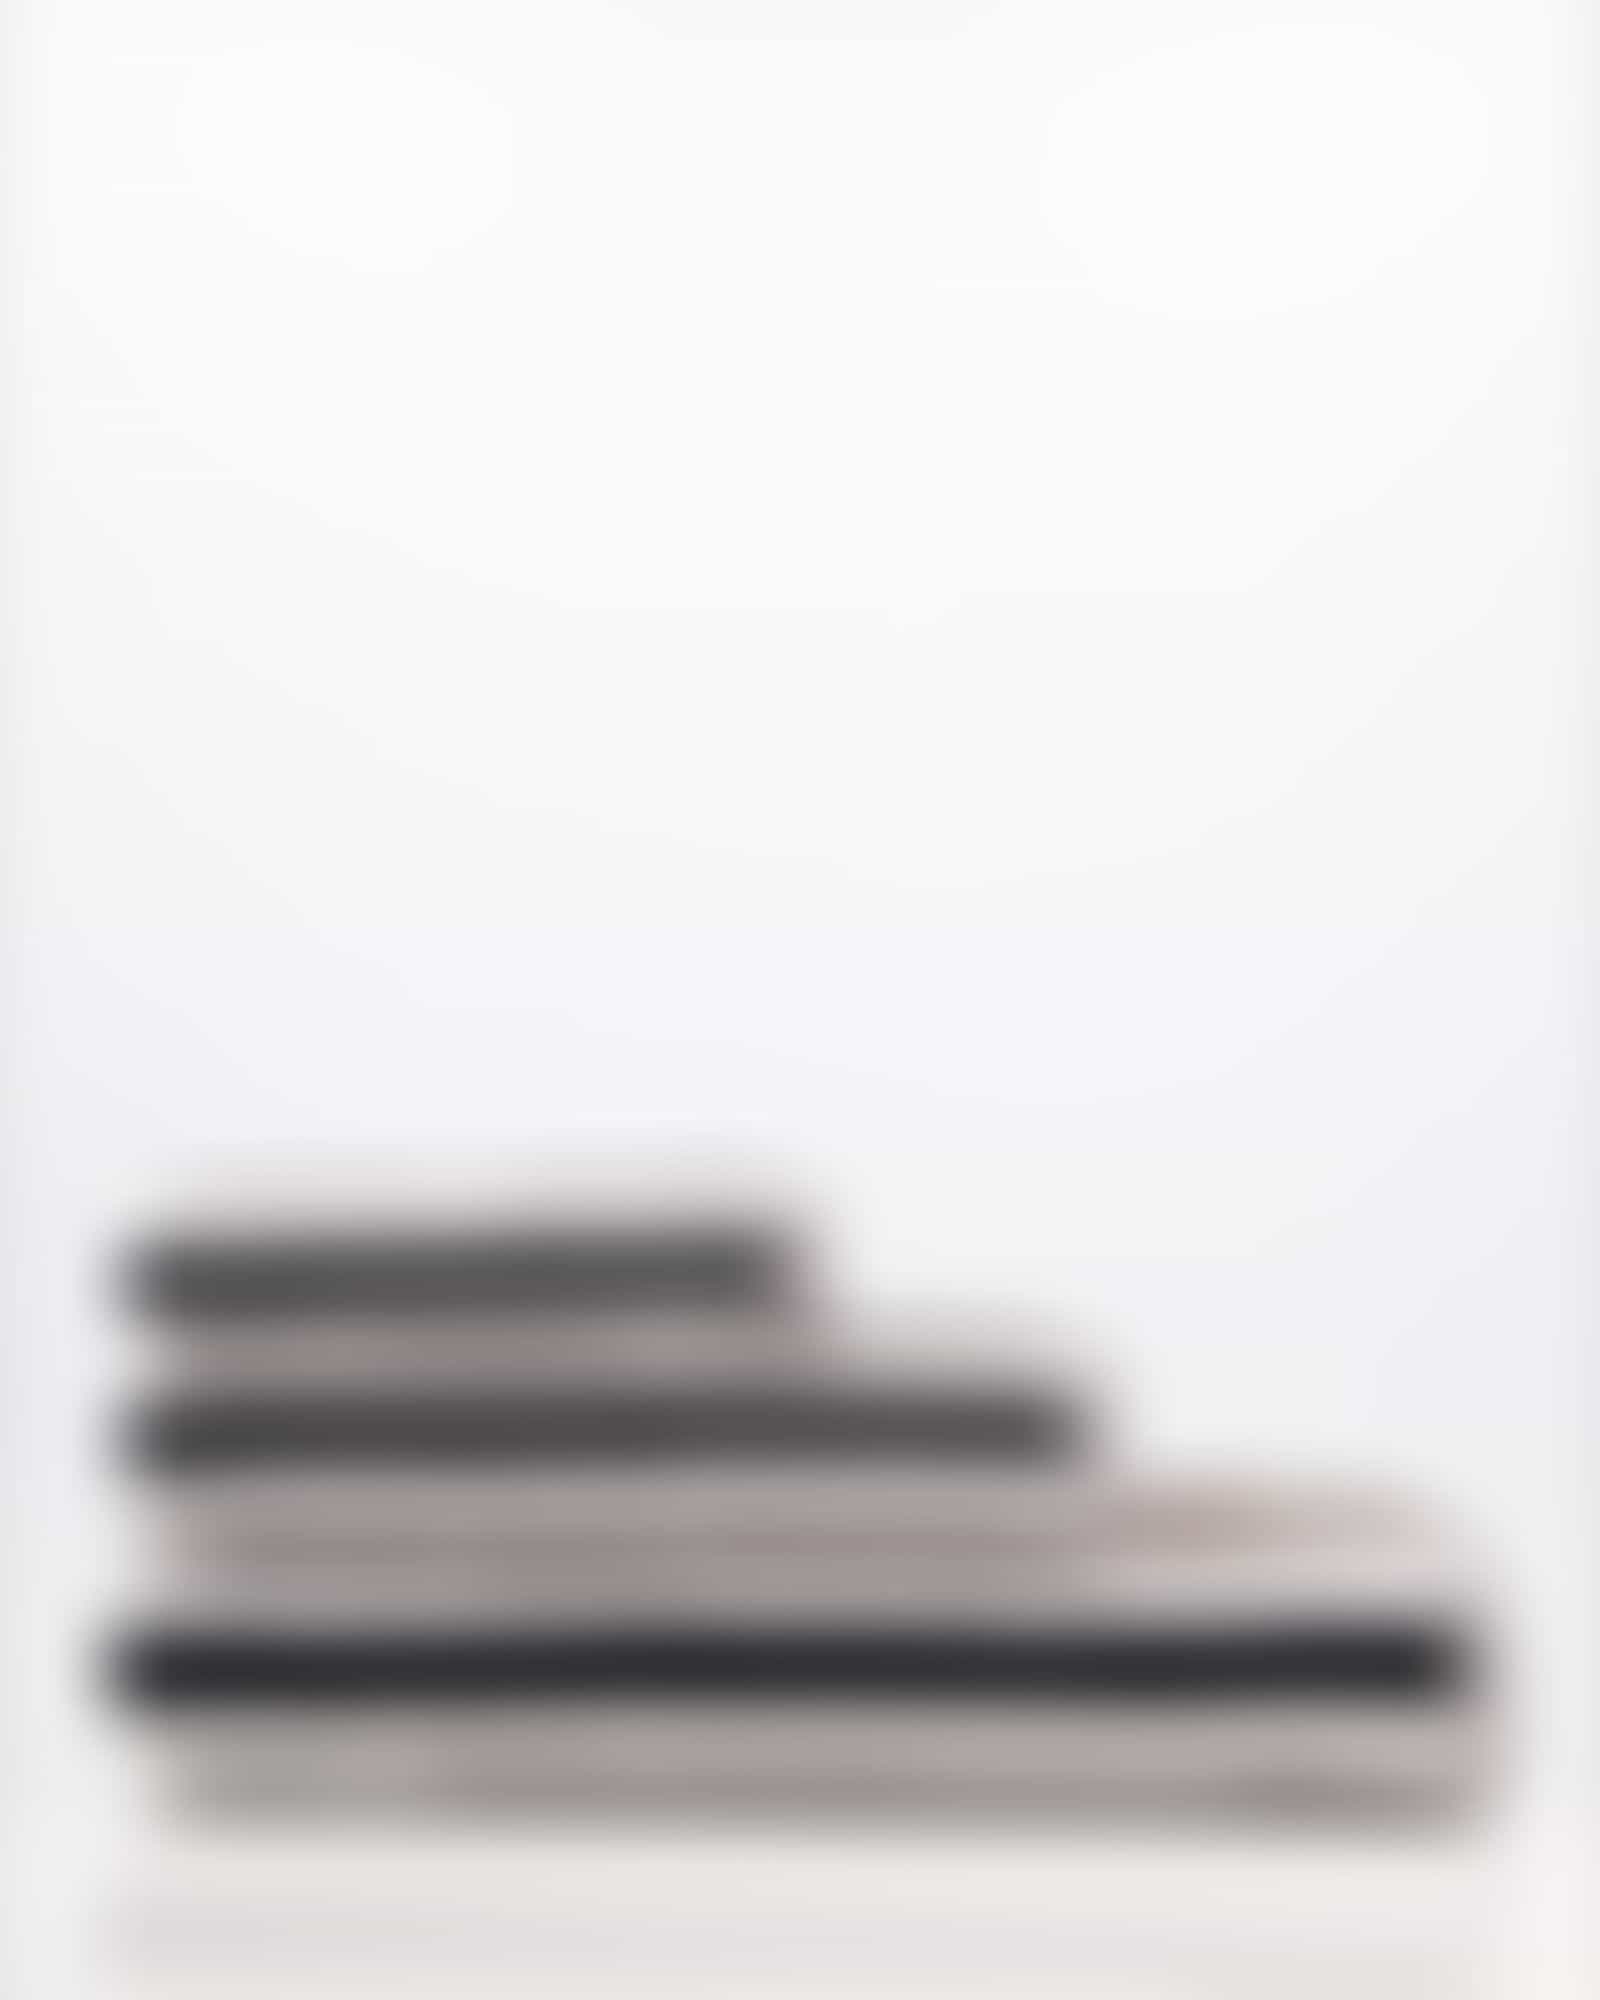 Cawö Handtücher Shades Streifen 6235 - Farbe: stein - 77 - Gästetuch 30x50 cm